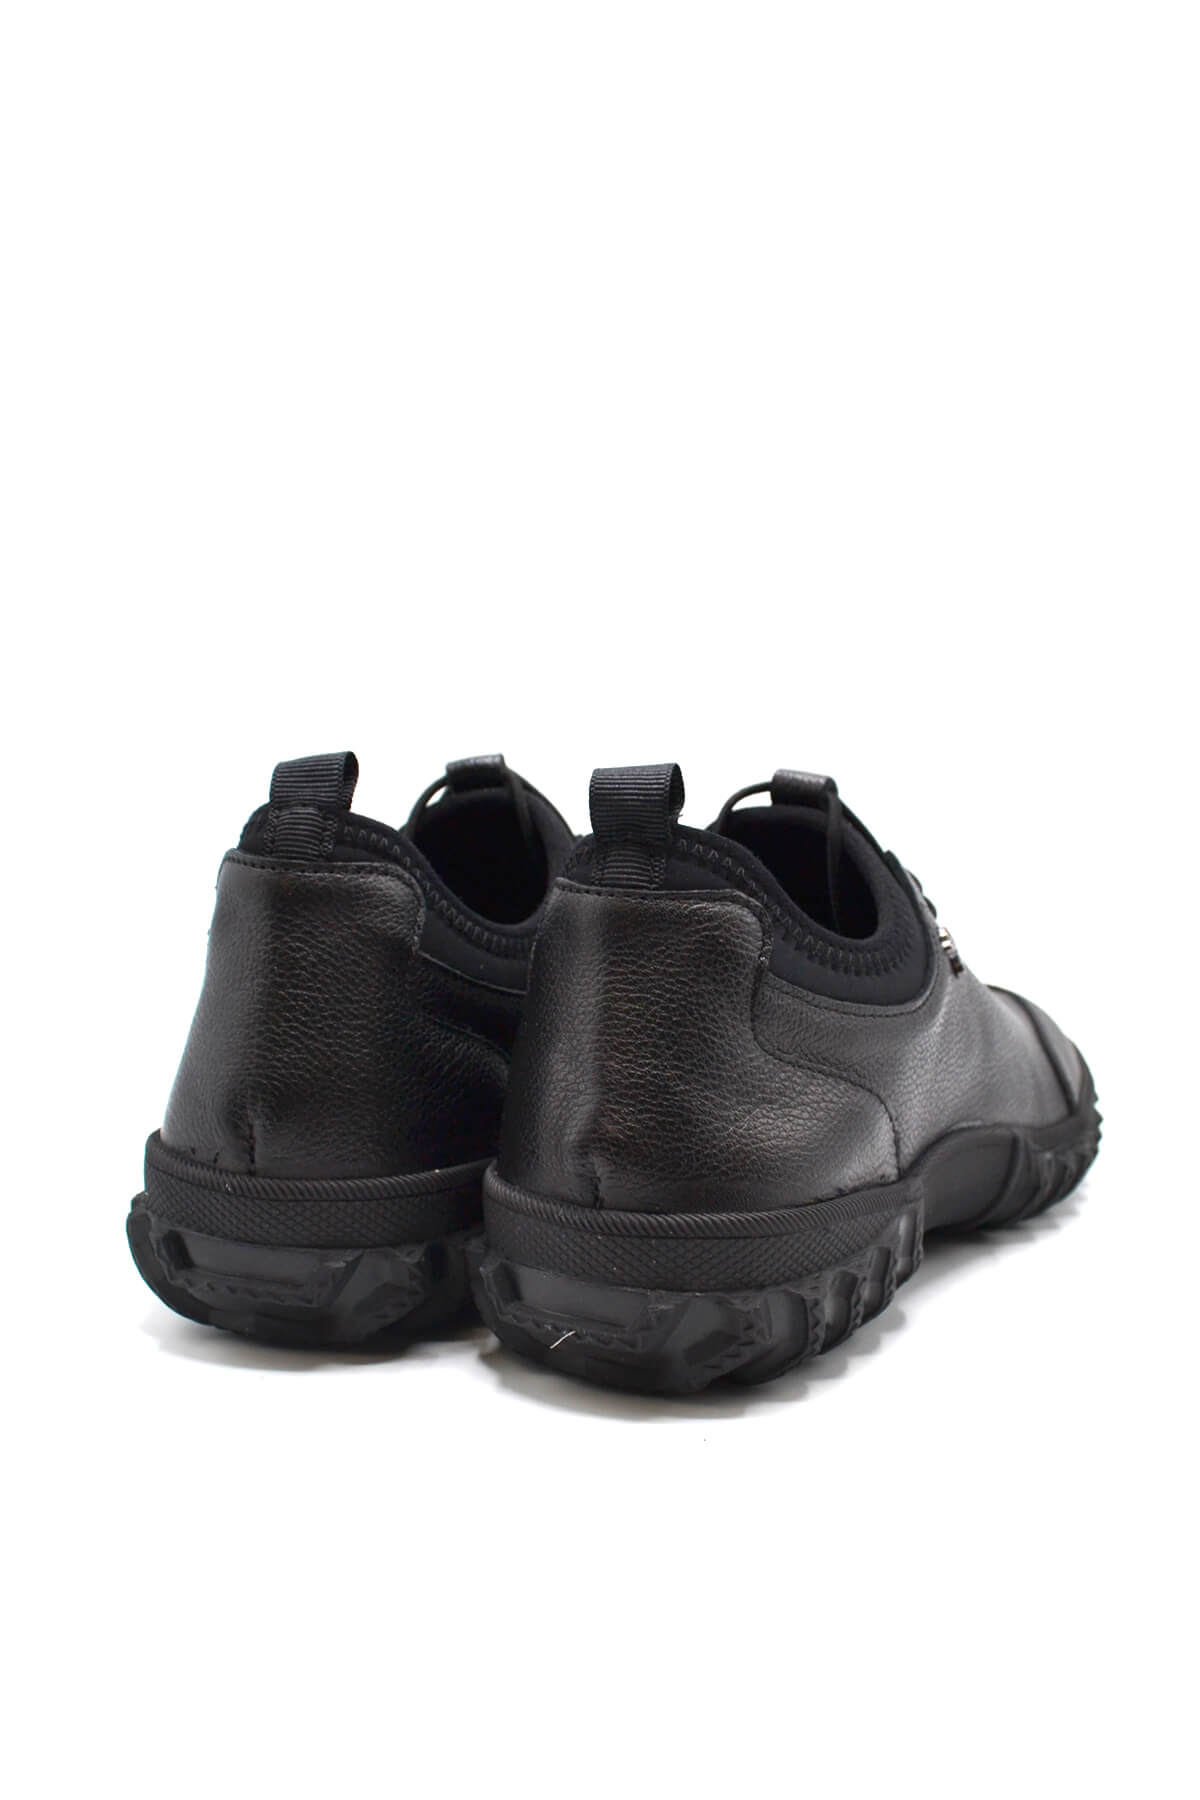 Kadın Comfort Deri Ayakkabı Siyah 2255201K